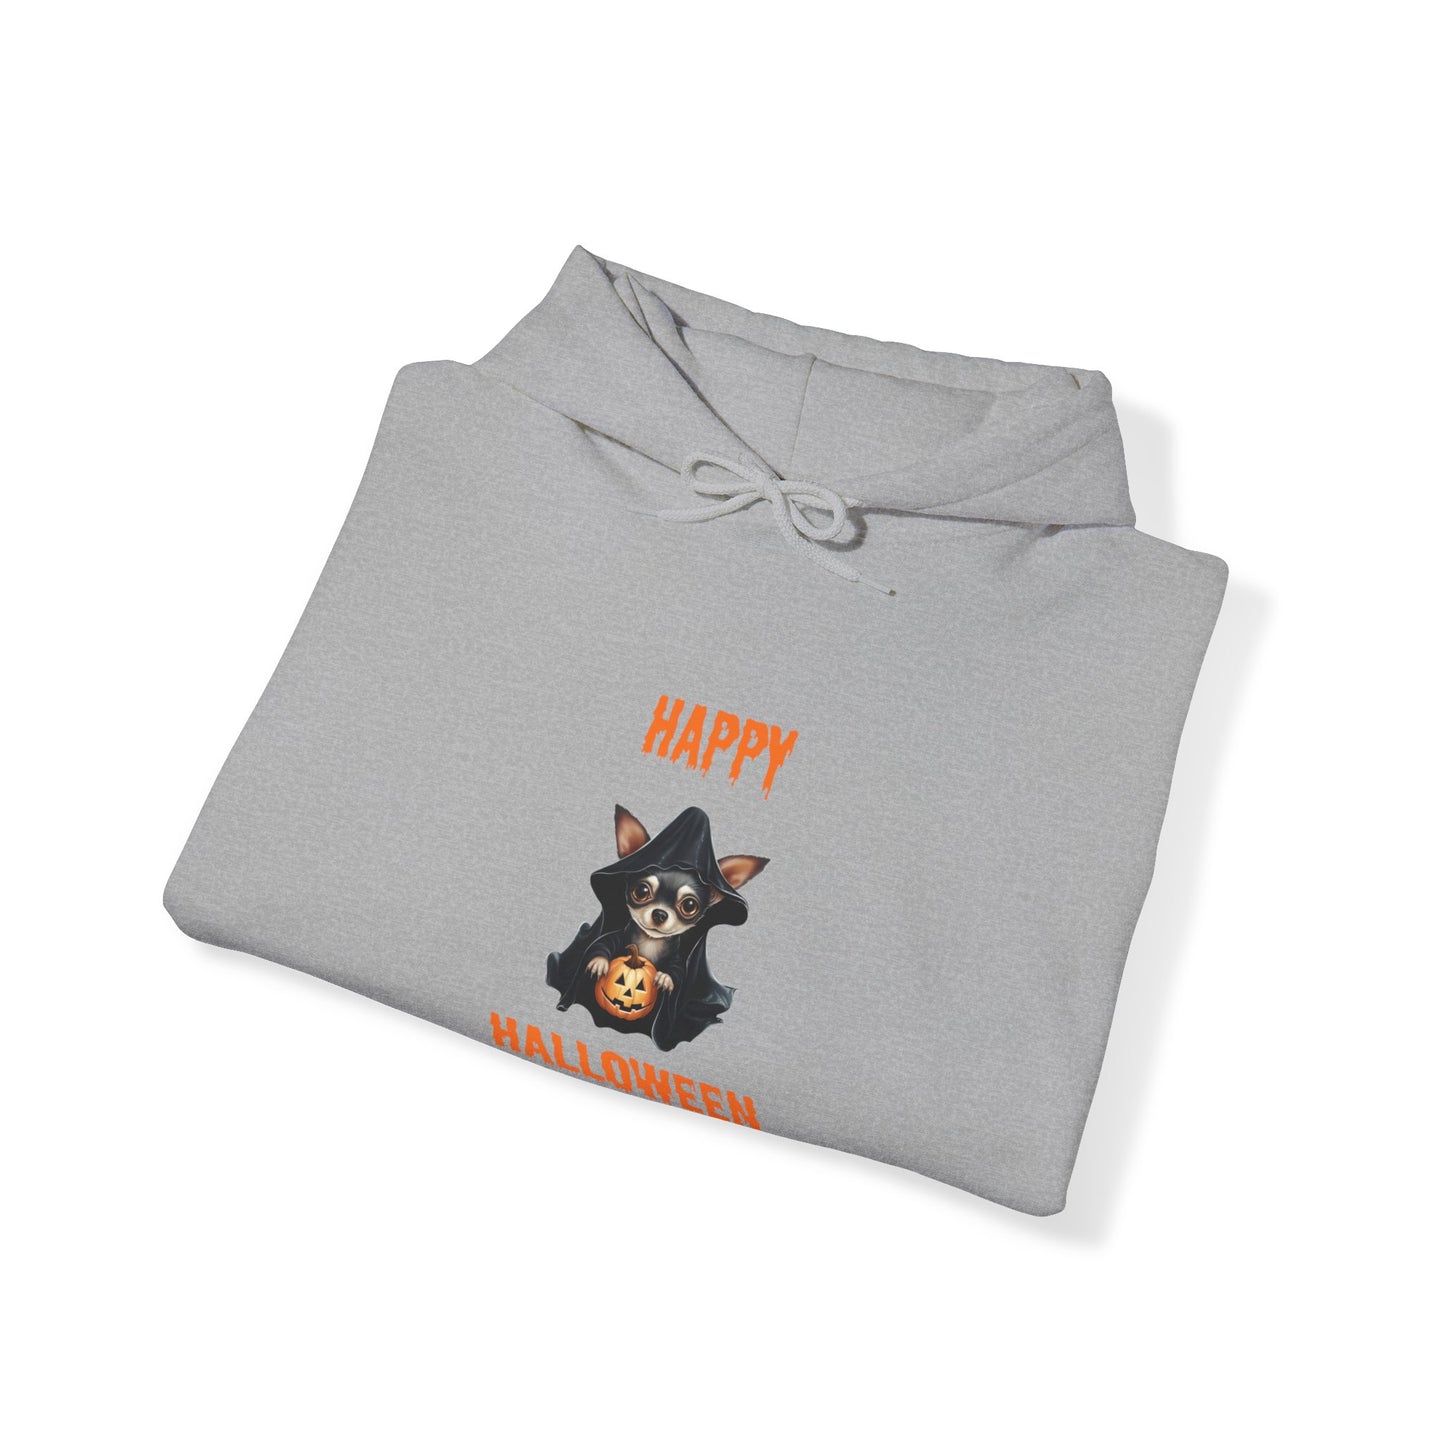 Happy Halloween Chihuahua Hoodie - Unisex Heavy Blend Hooded Sweatshirt